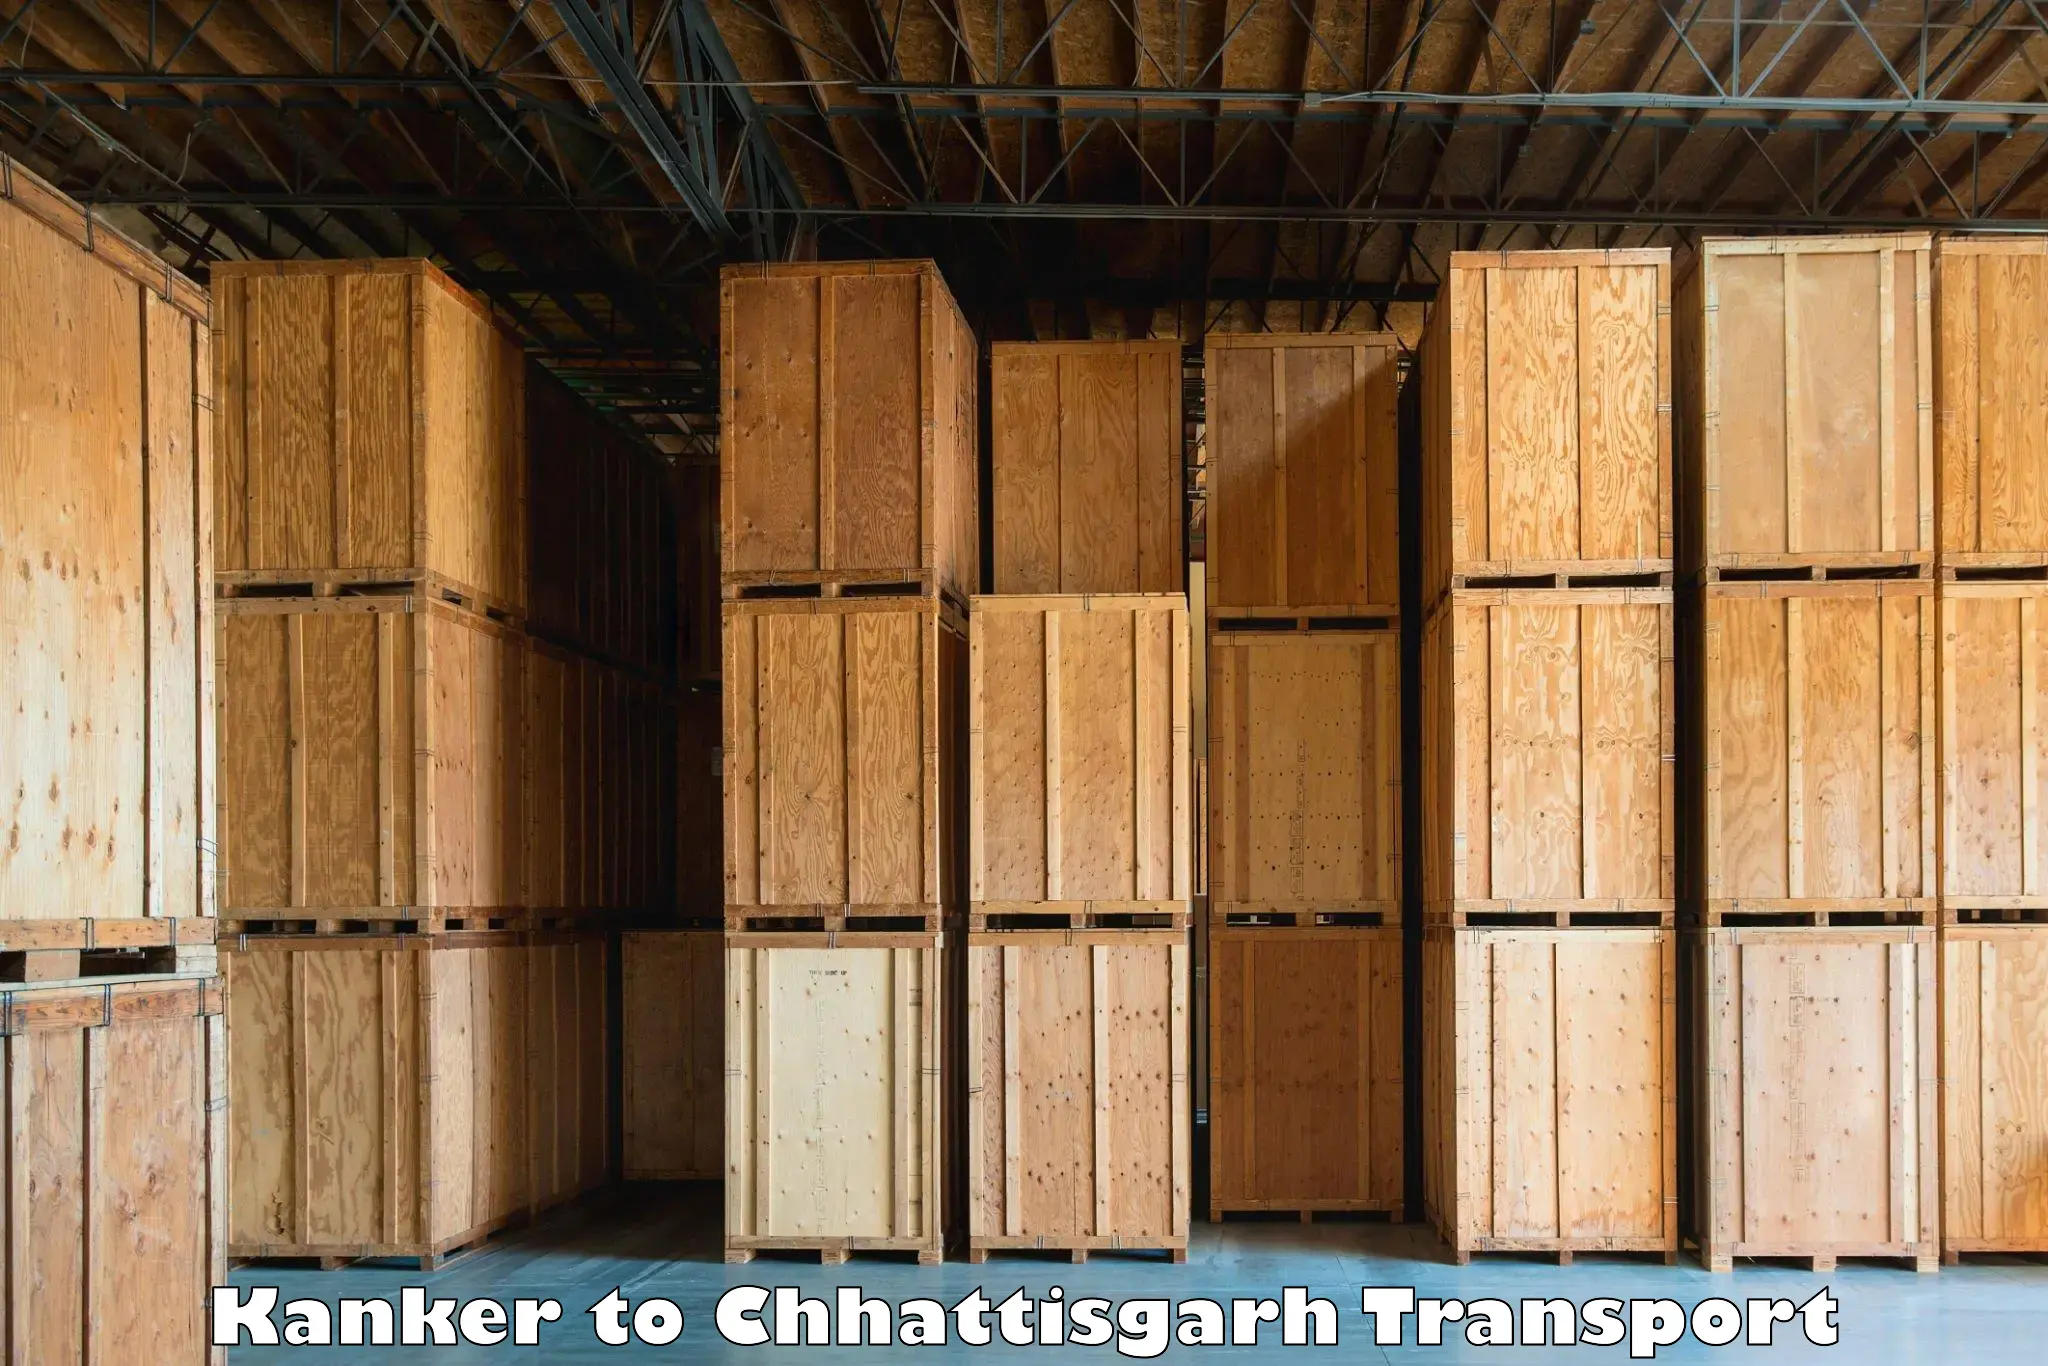 Transport shared services Kanker to Chhattisgarh